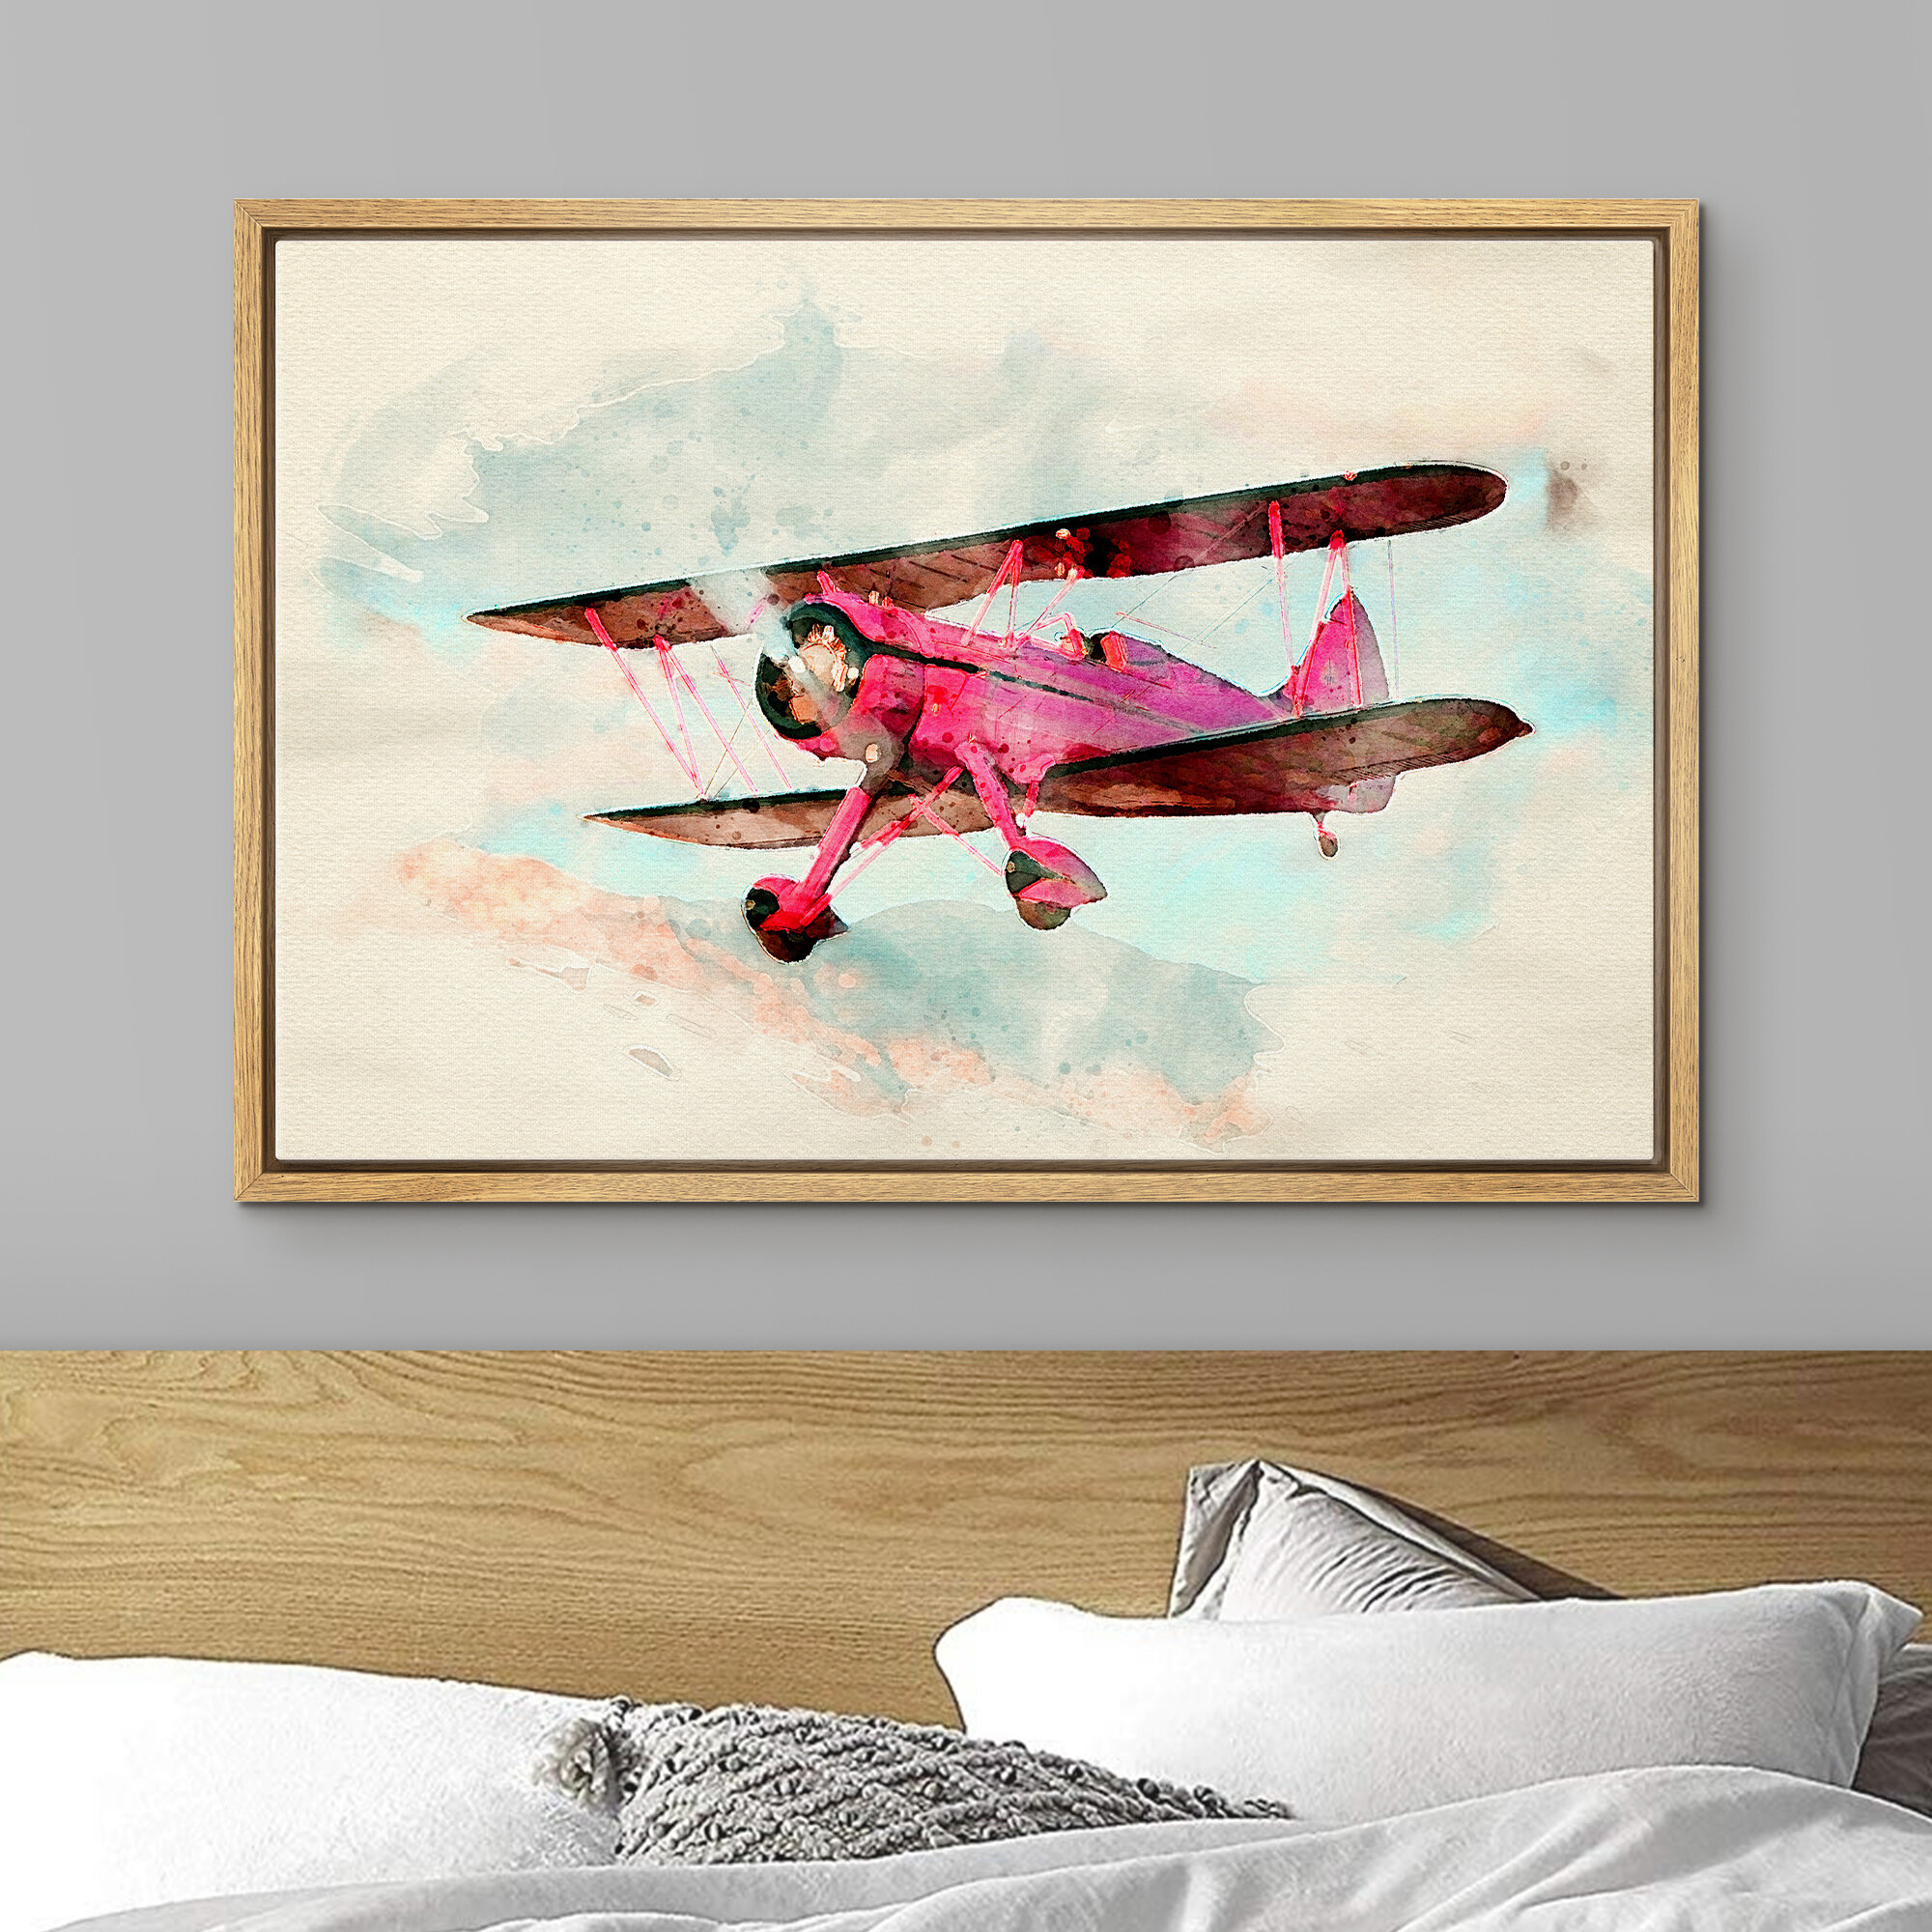 https://assets.wfcdn.com/im/78863215/compr-r85/1791/179174093/vintage-watercolor-hot-pink-biplane-framed-on-canvas-print.jpg